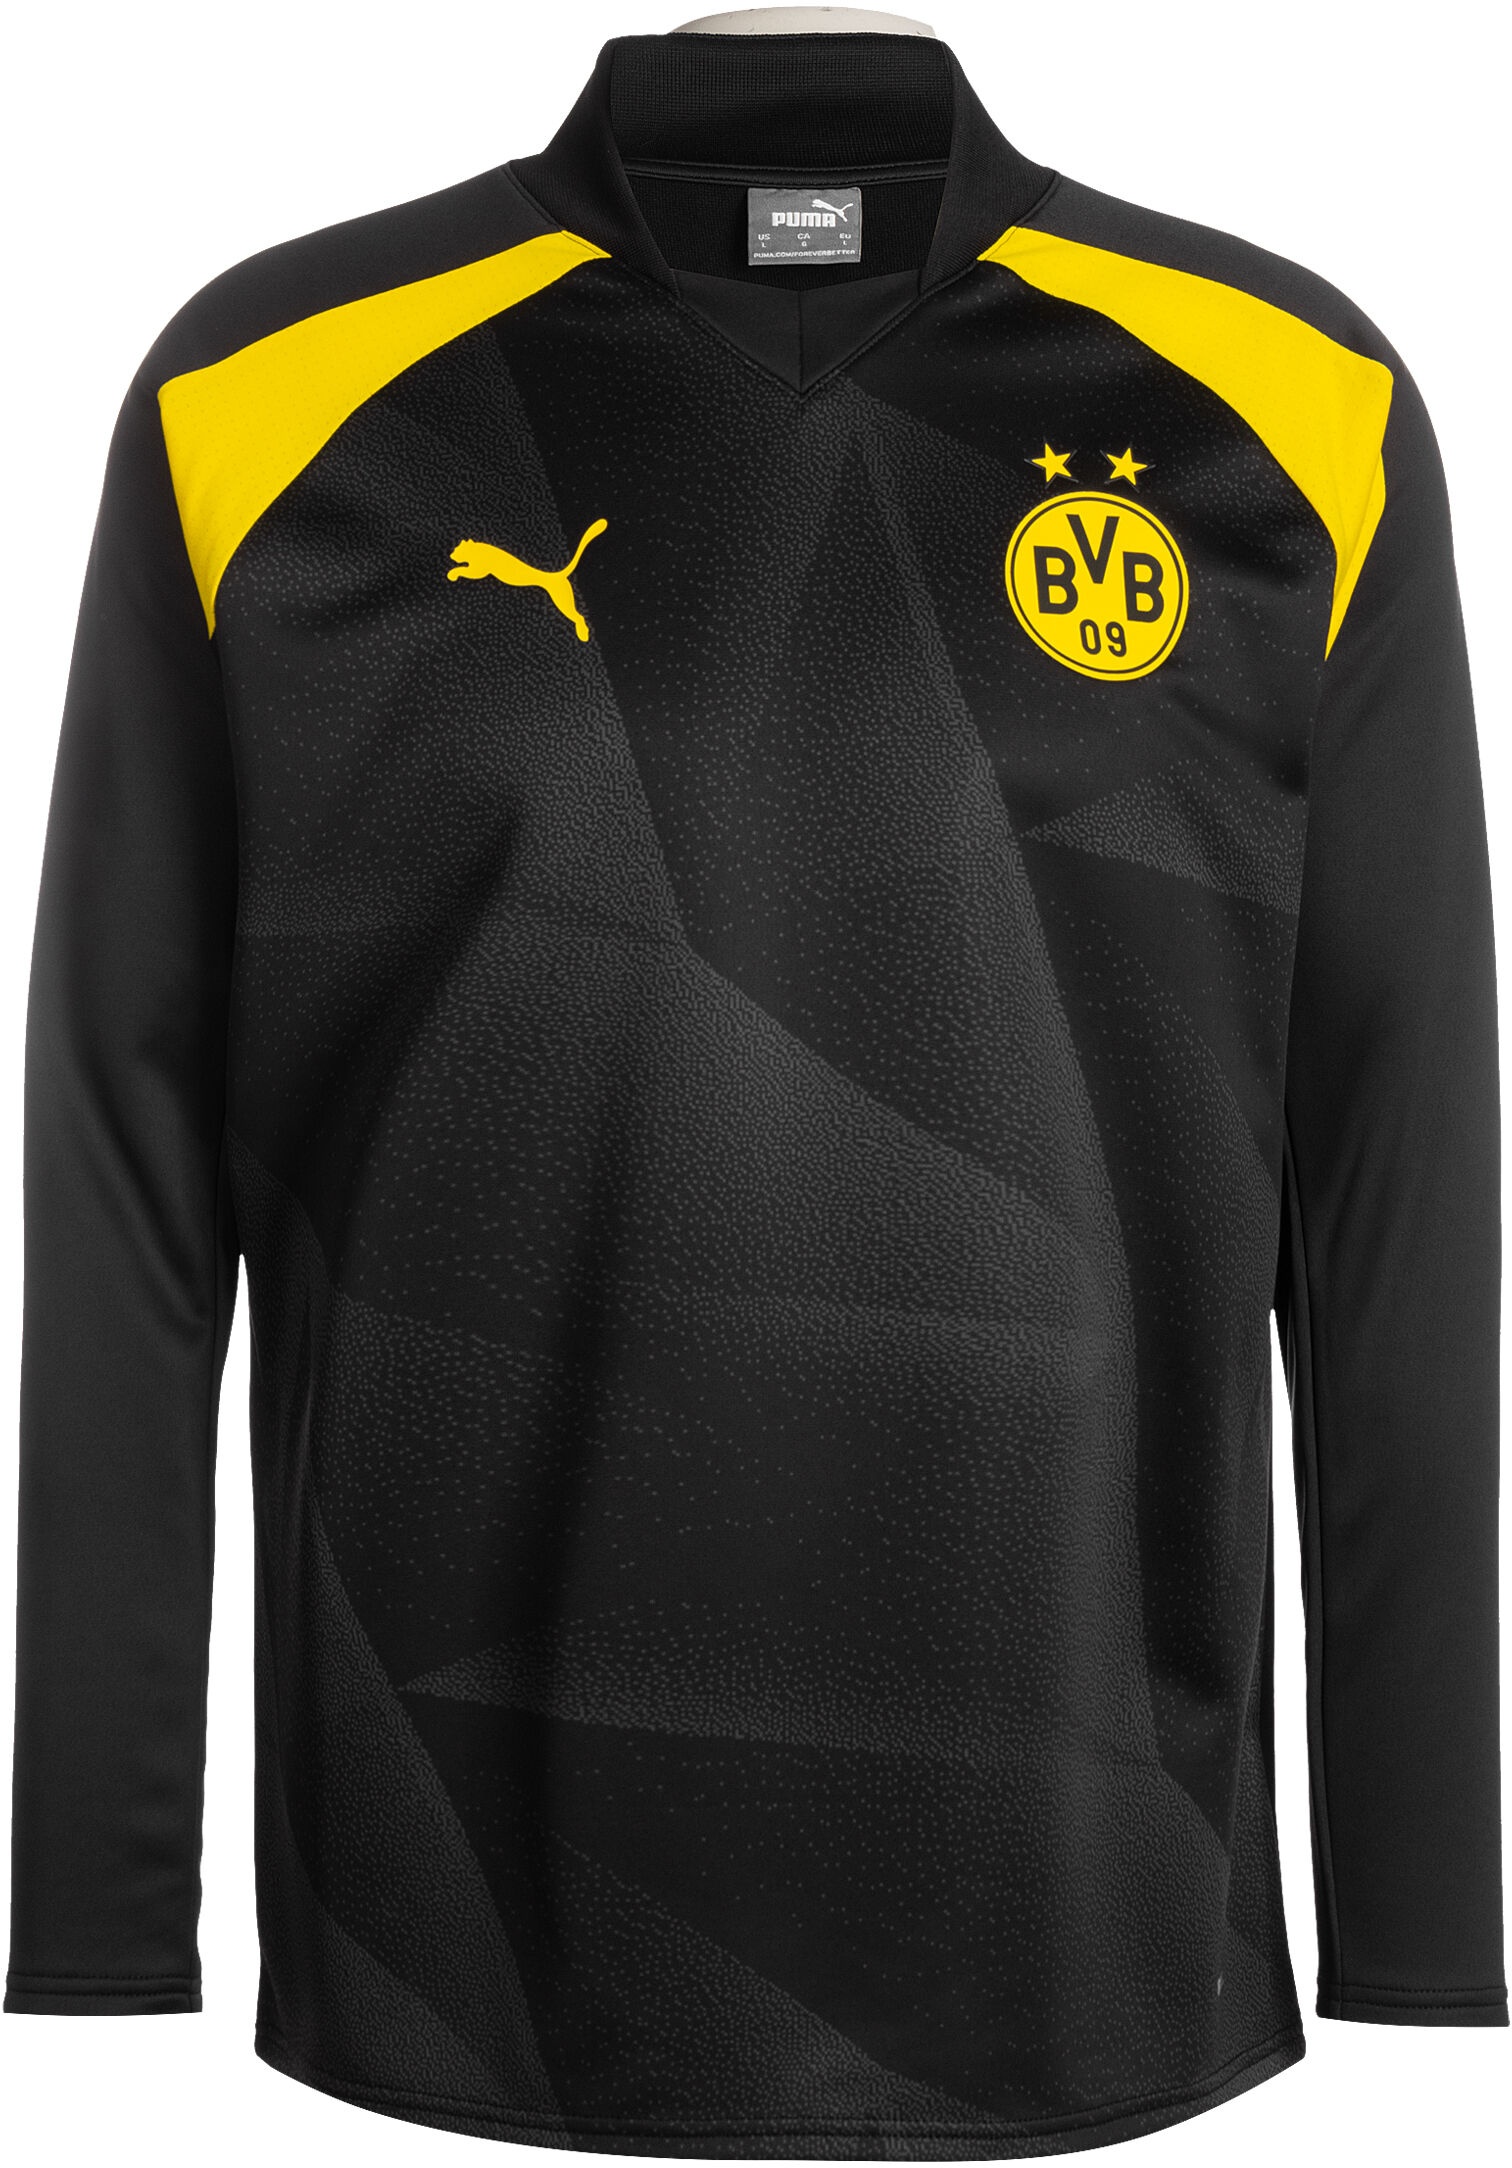 Puma Borussia Dortmund,  Gr. XL,  Herren,  schwarz / gelb